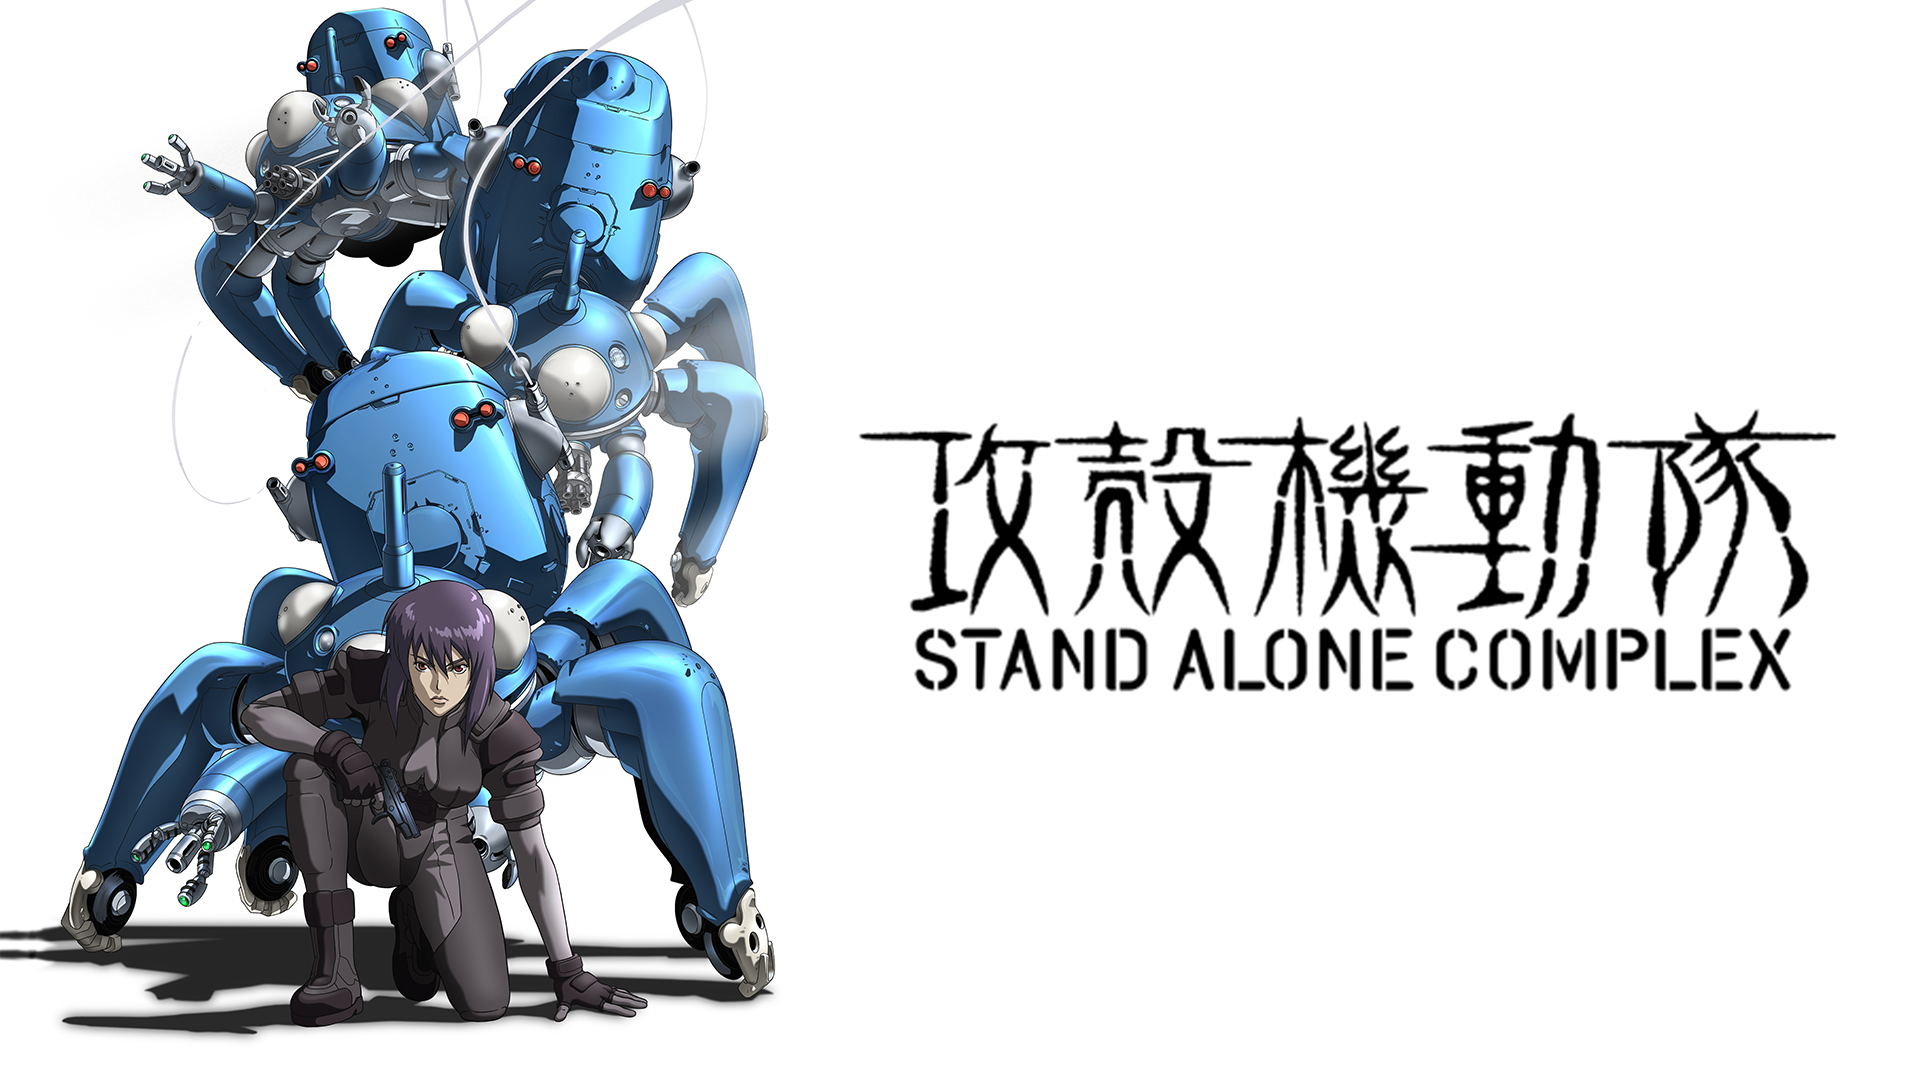 アニメ 攻殻機動隊 Stand Alone Complexの動画を全話無料視聴できる配信サイトまとめ